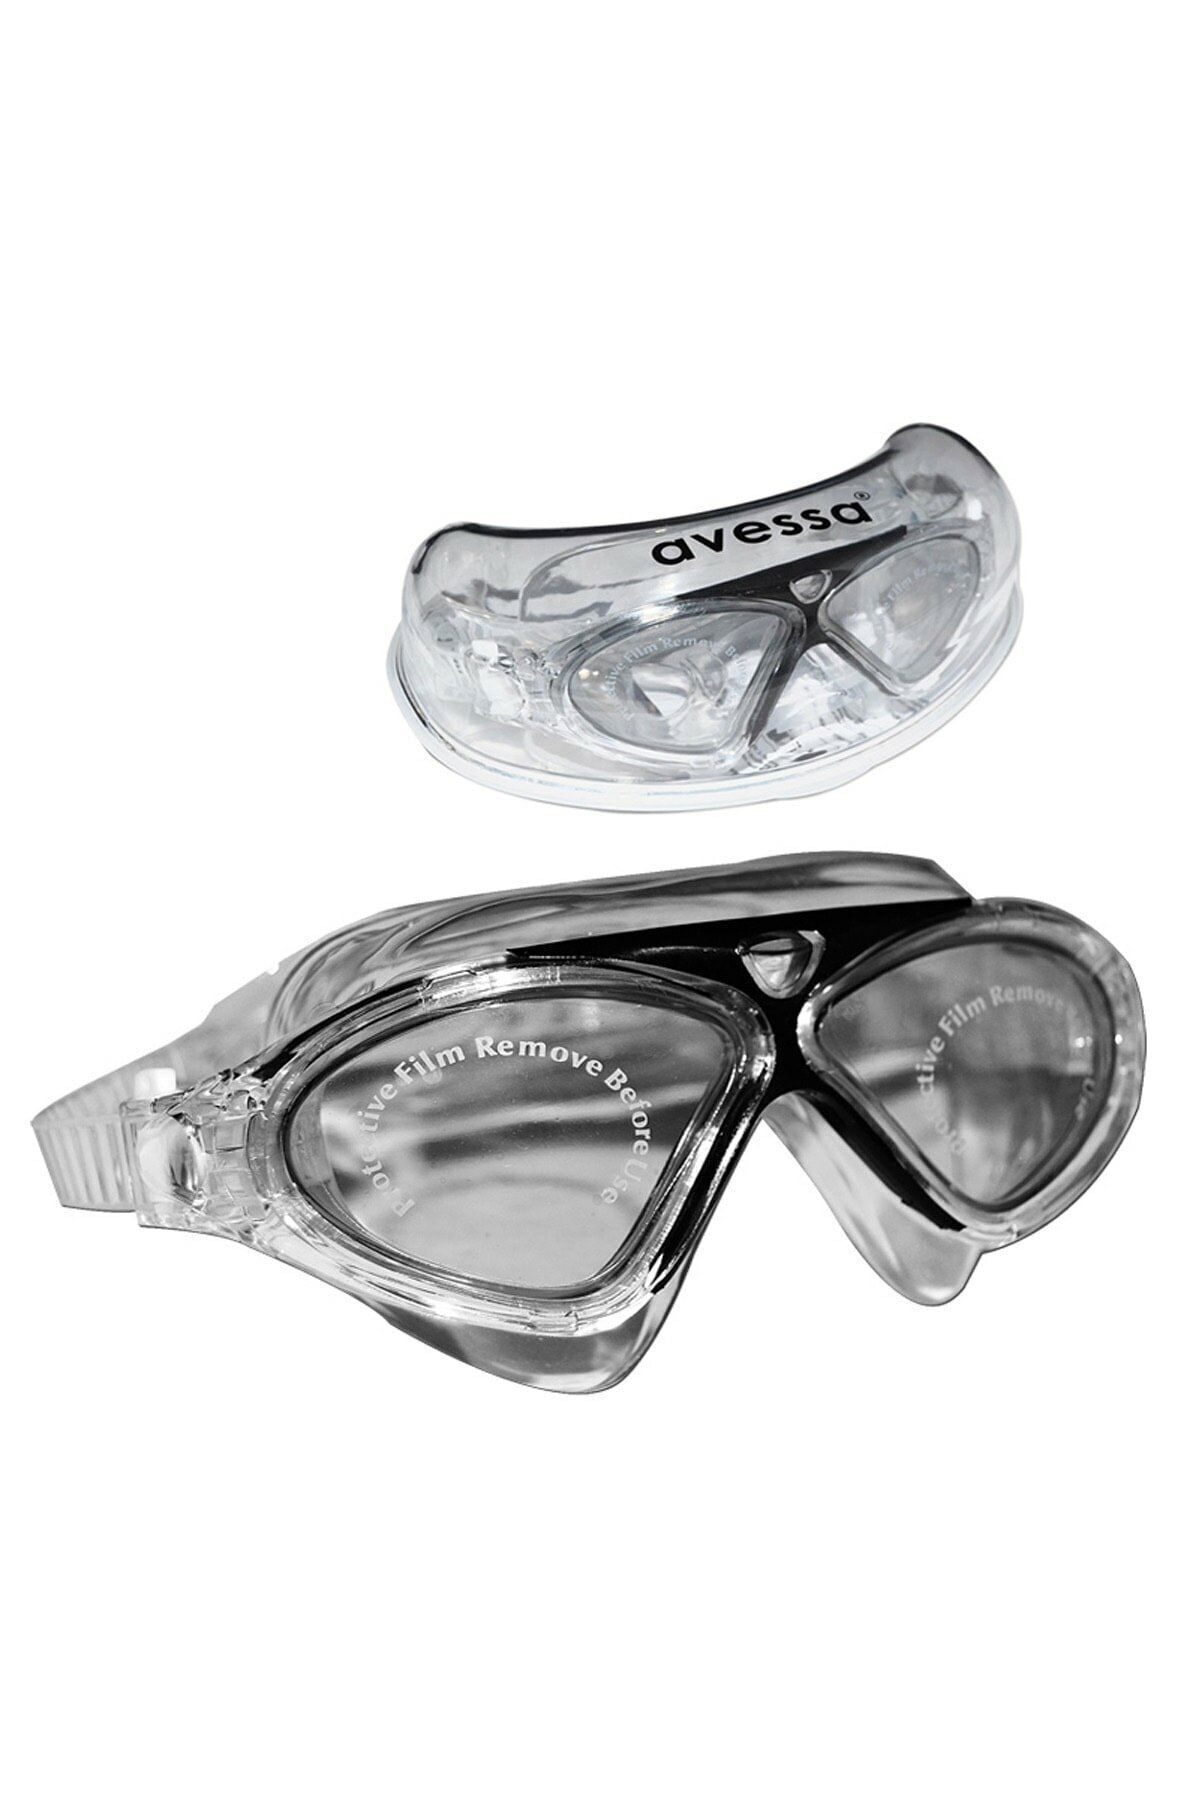 Avessa Yetişkin Yüzücü Gözlüğü - Deniz Gözlüğü - Havuz Gözlüğü - Kadın Erkek Bay Büyük Gözlük Gözlüğü